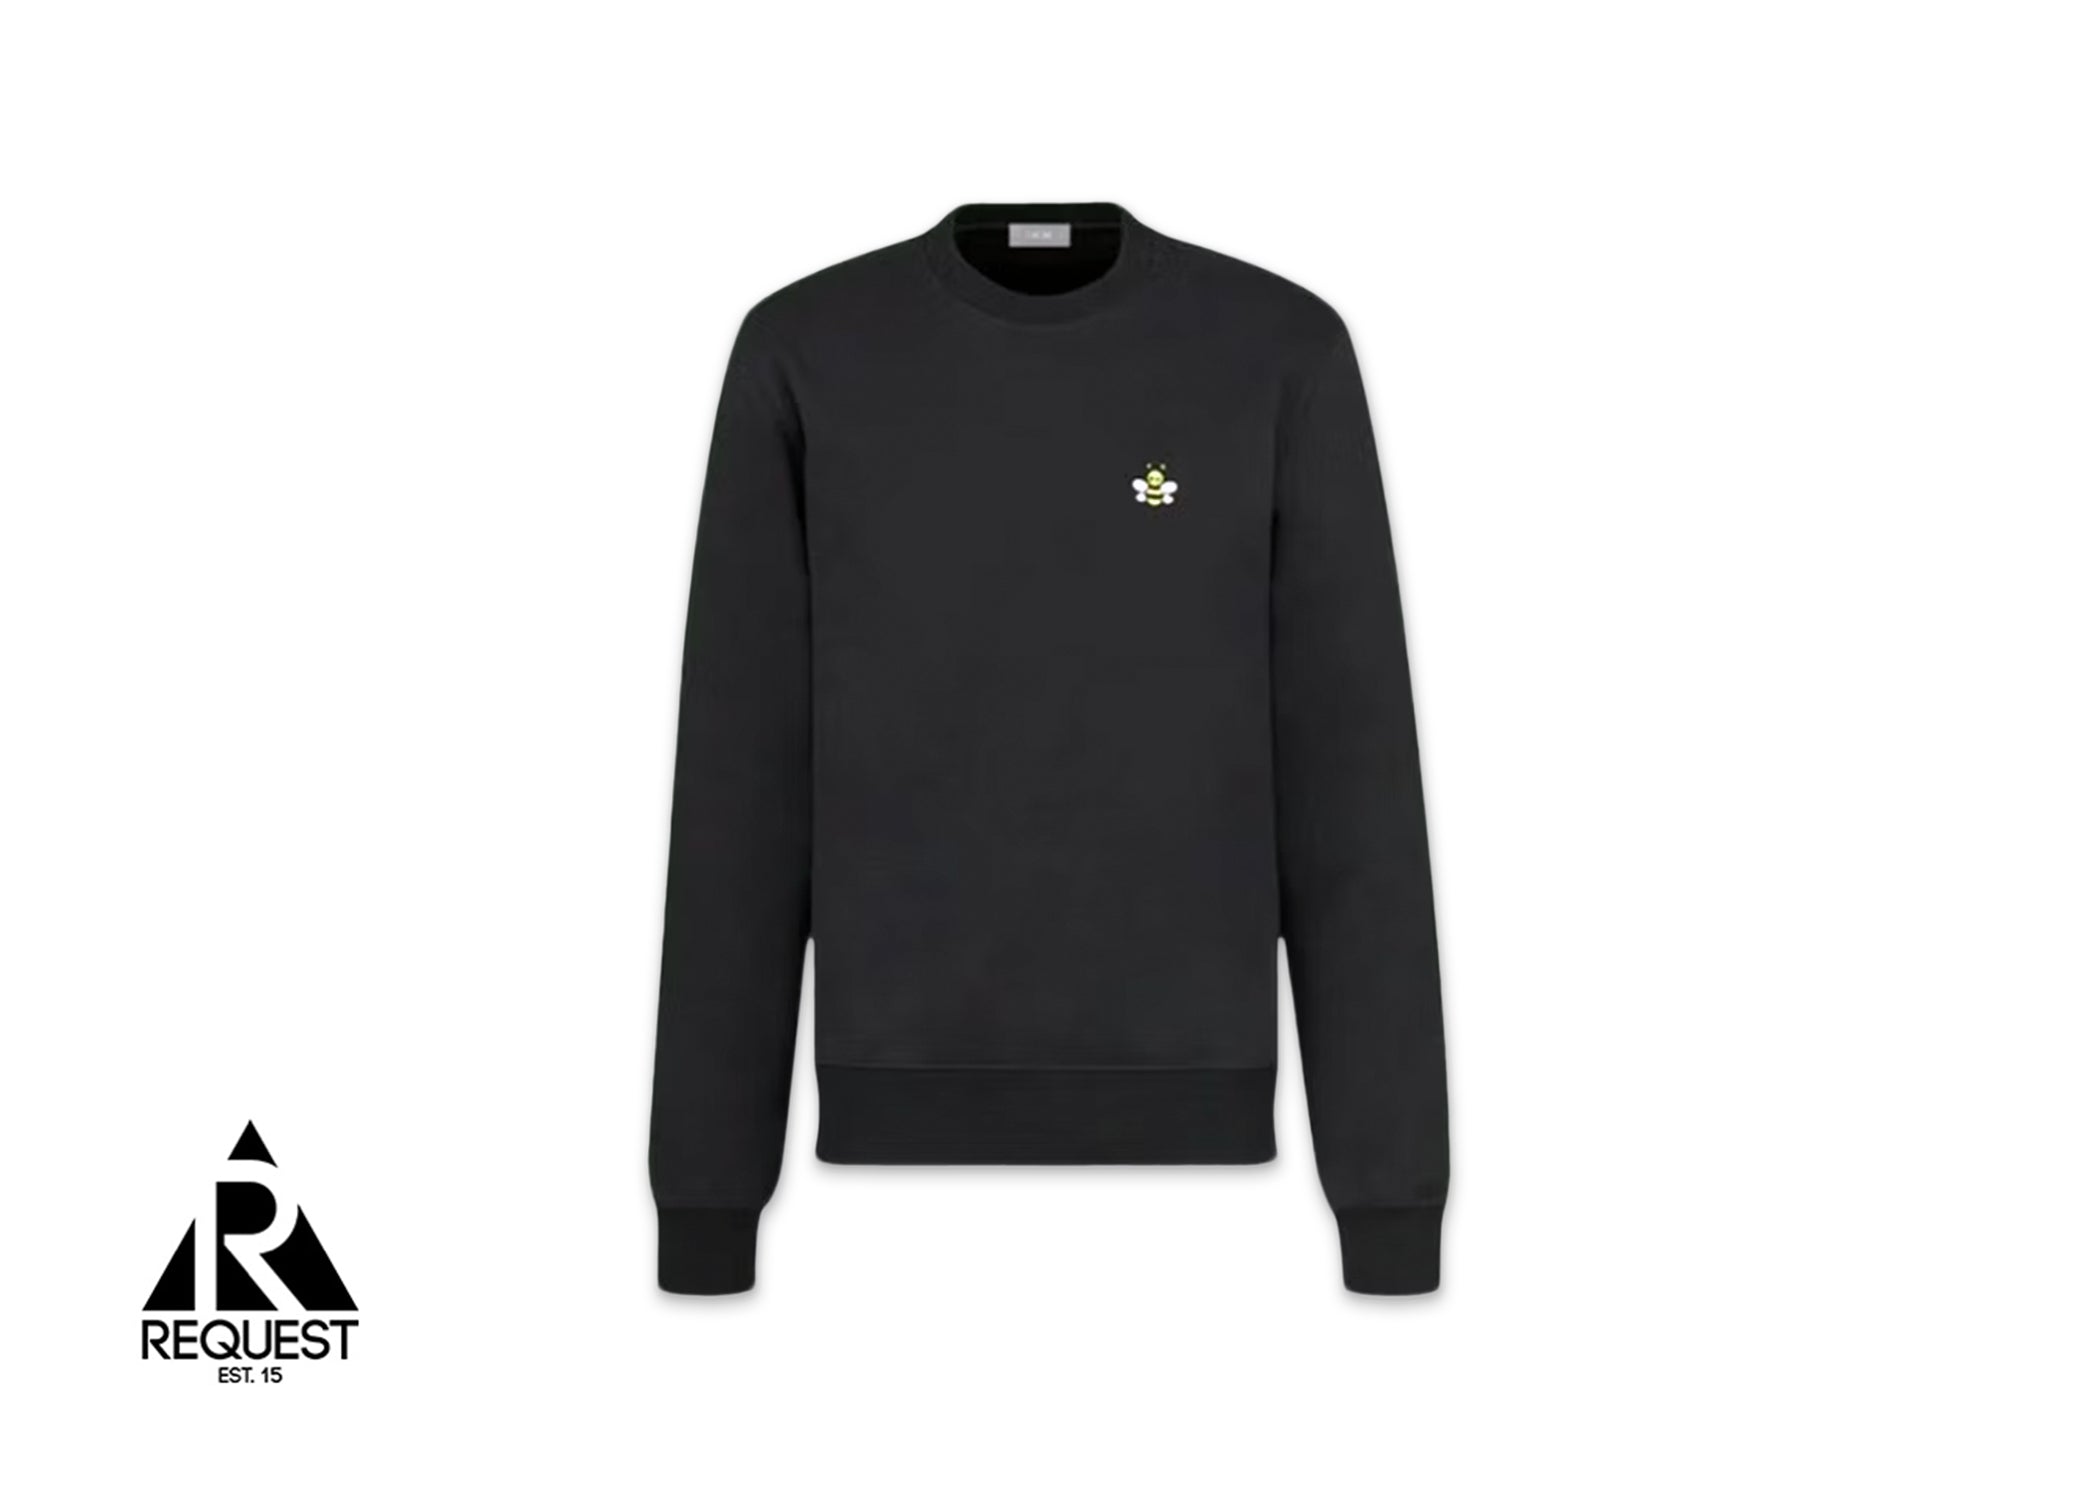 Dior x KAWS Bee Logo Crewneck Sweatshirt "Black"